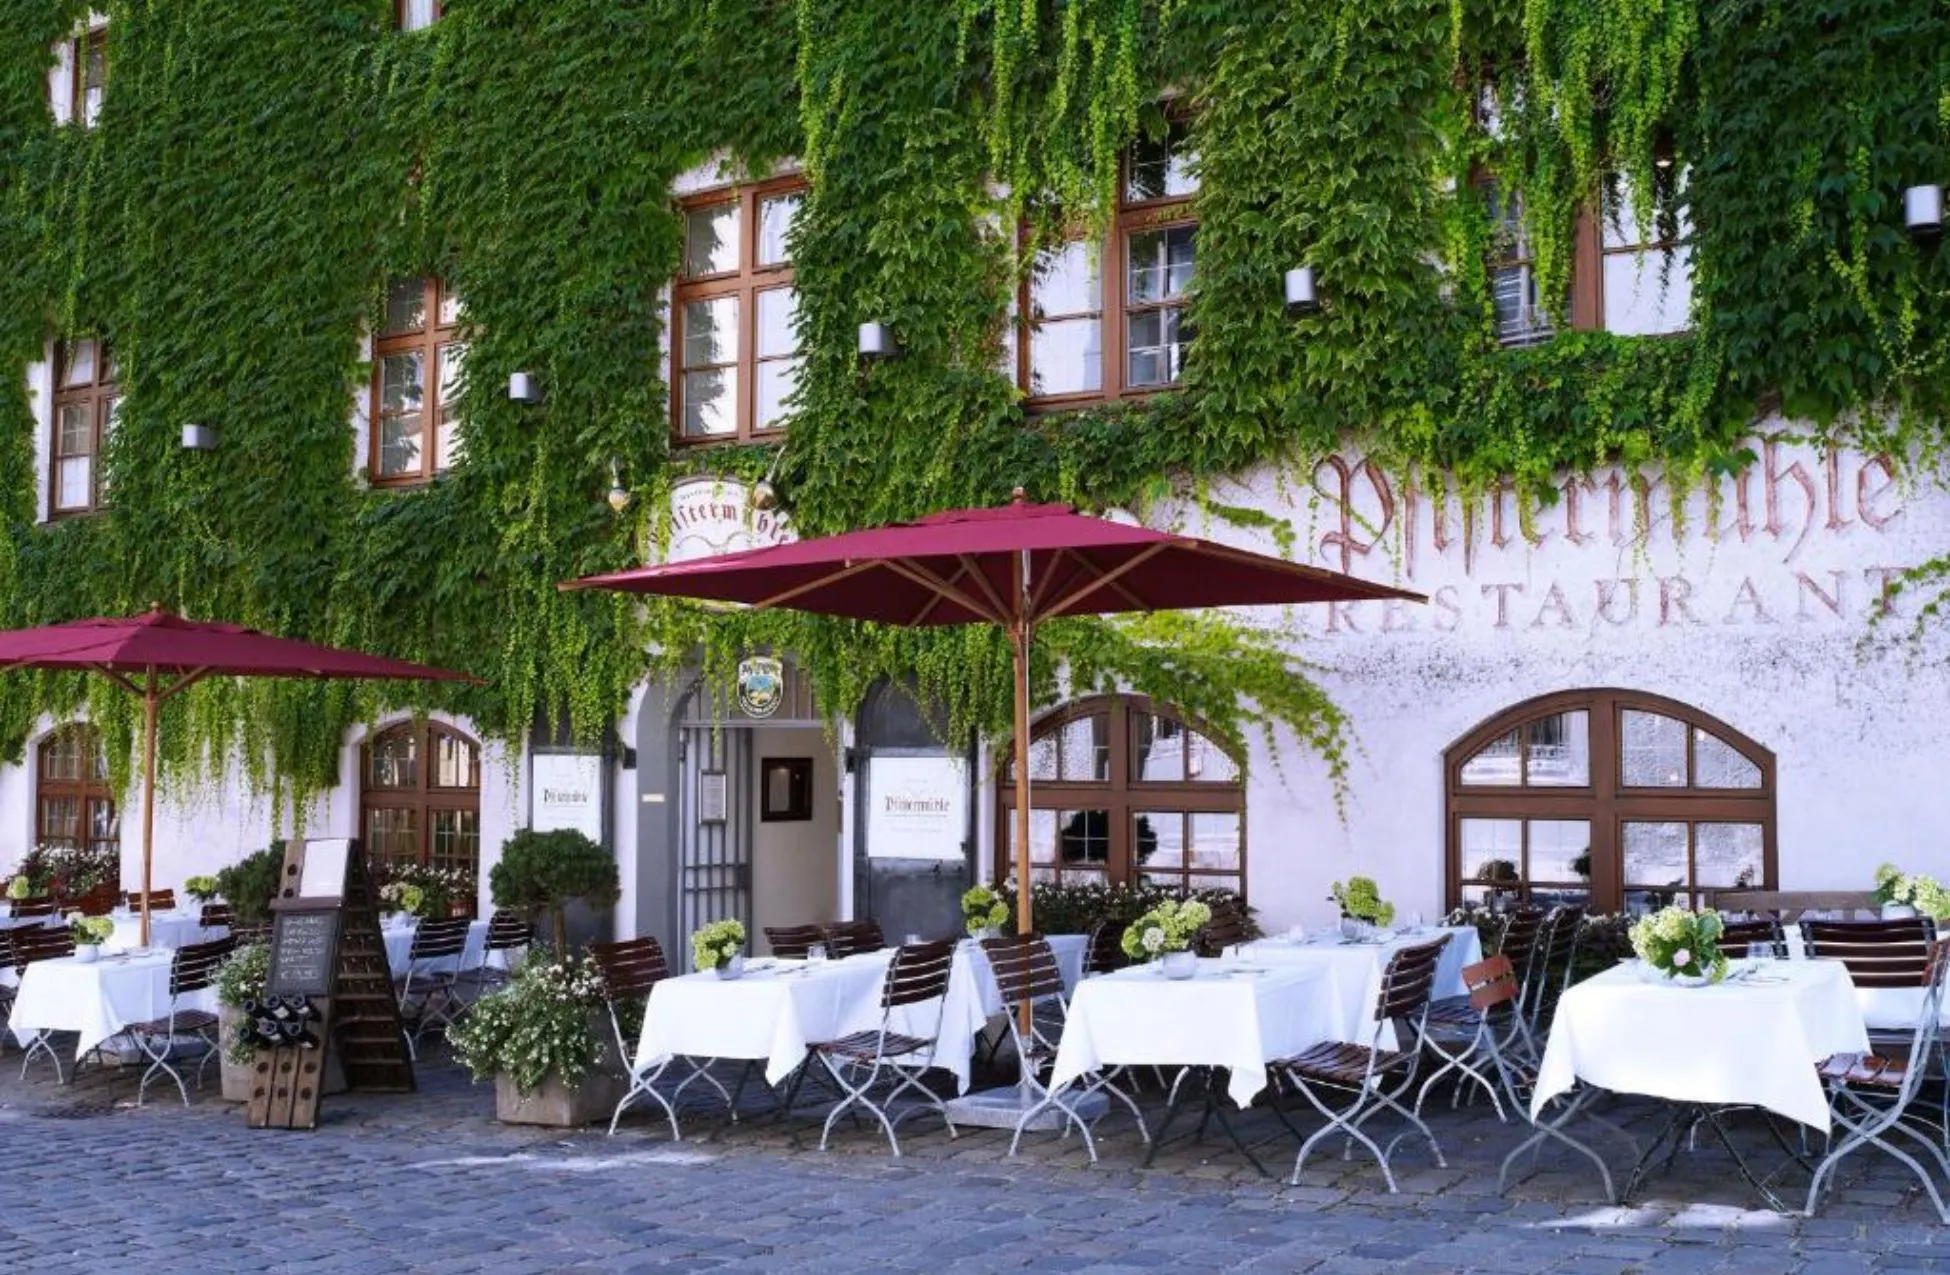 Platzl Hotel - Best Hotels In Munich